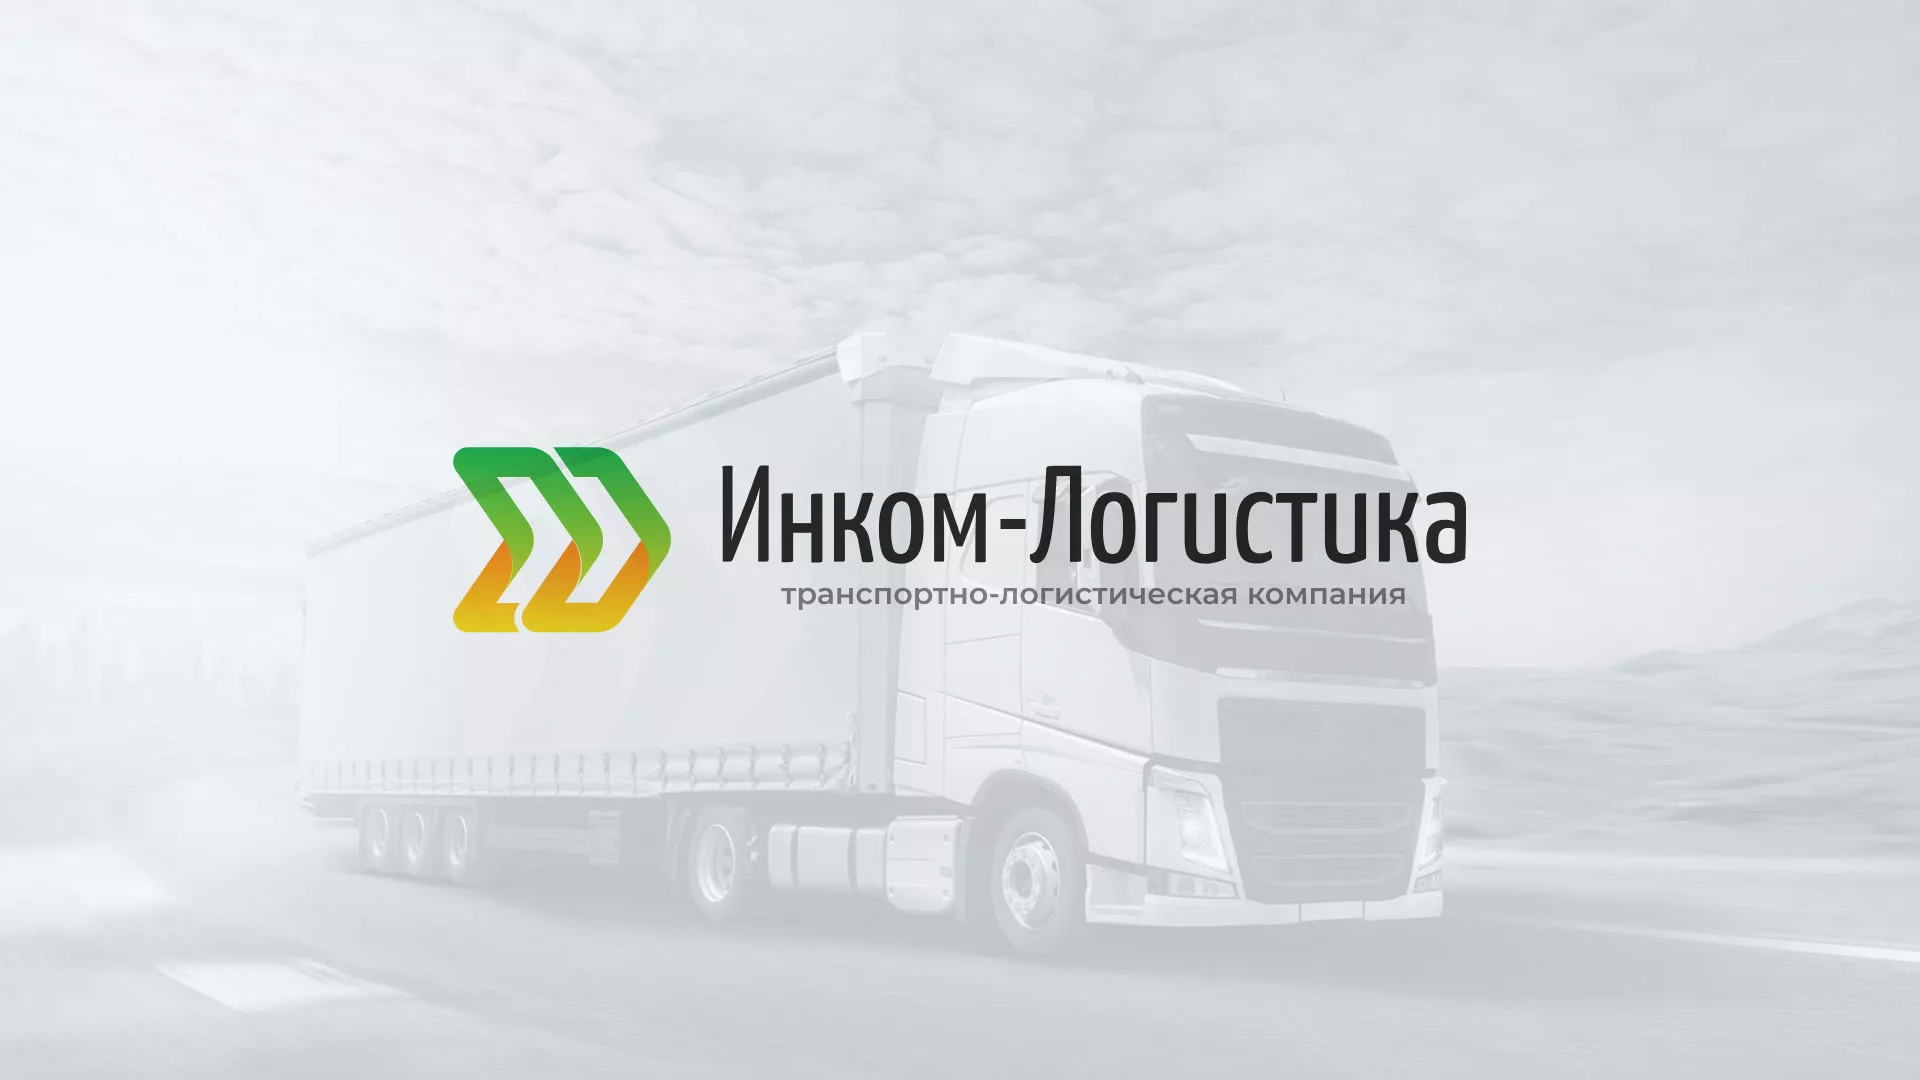 Разработка логотипа и сайта компании «Инком-Логистика» в Усть-Катаве